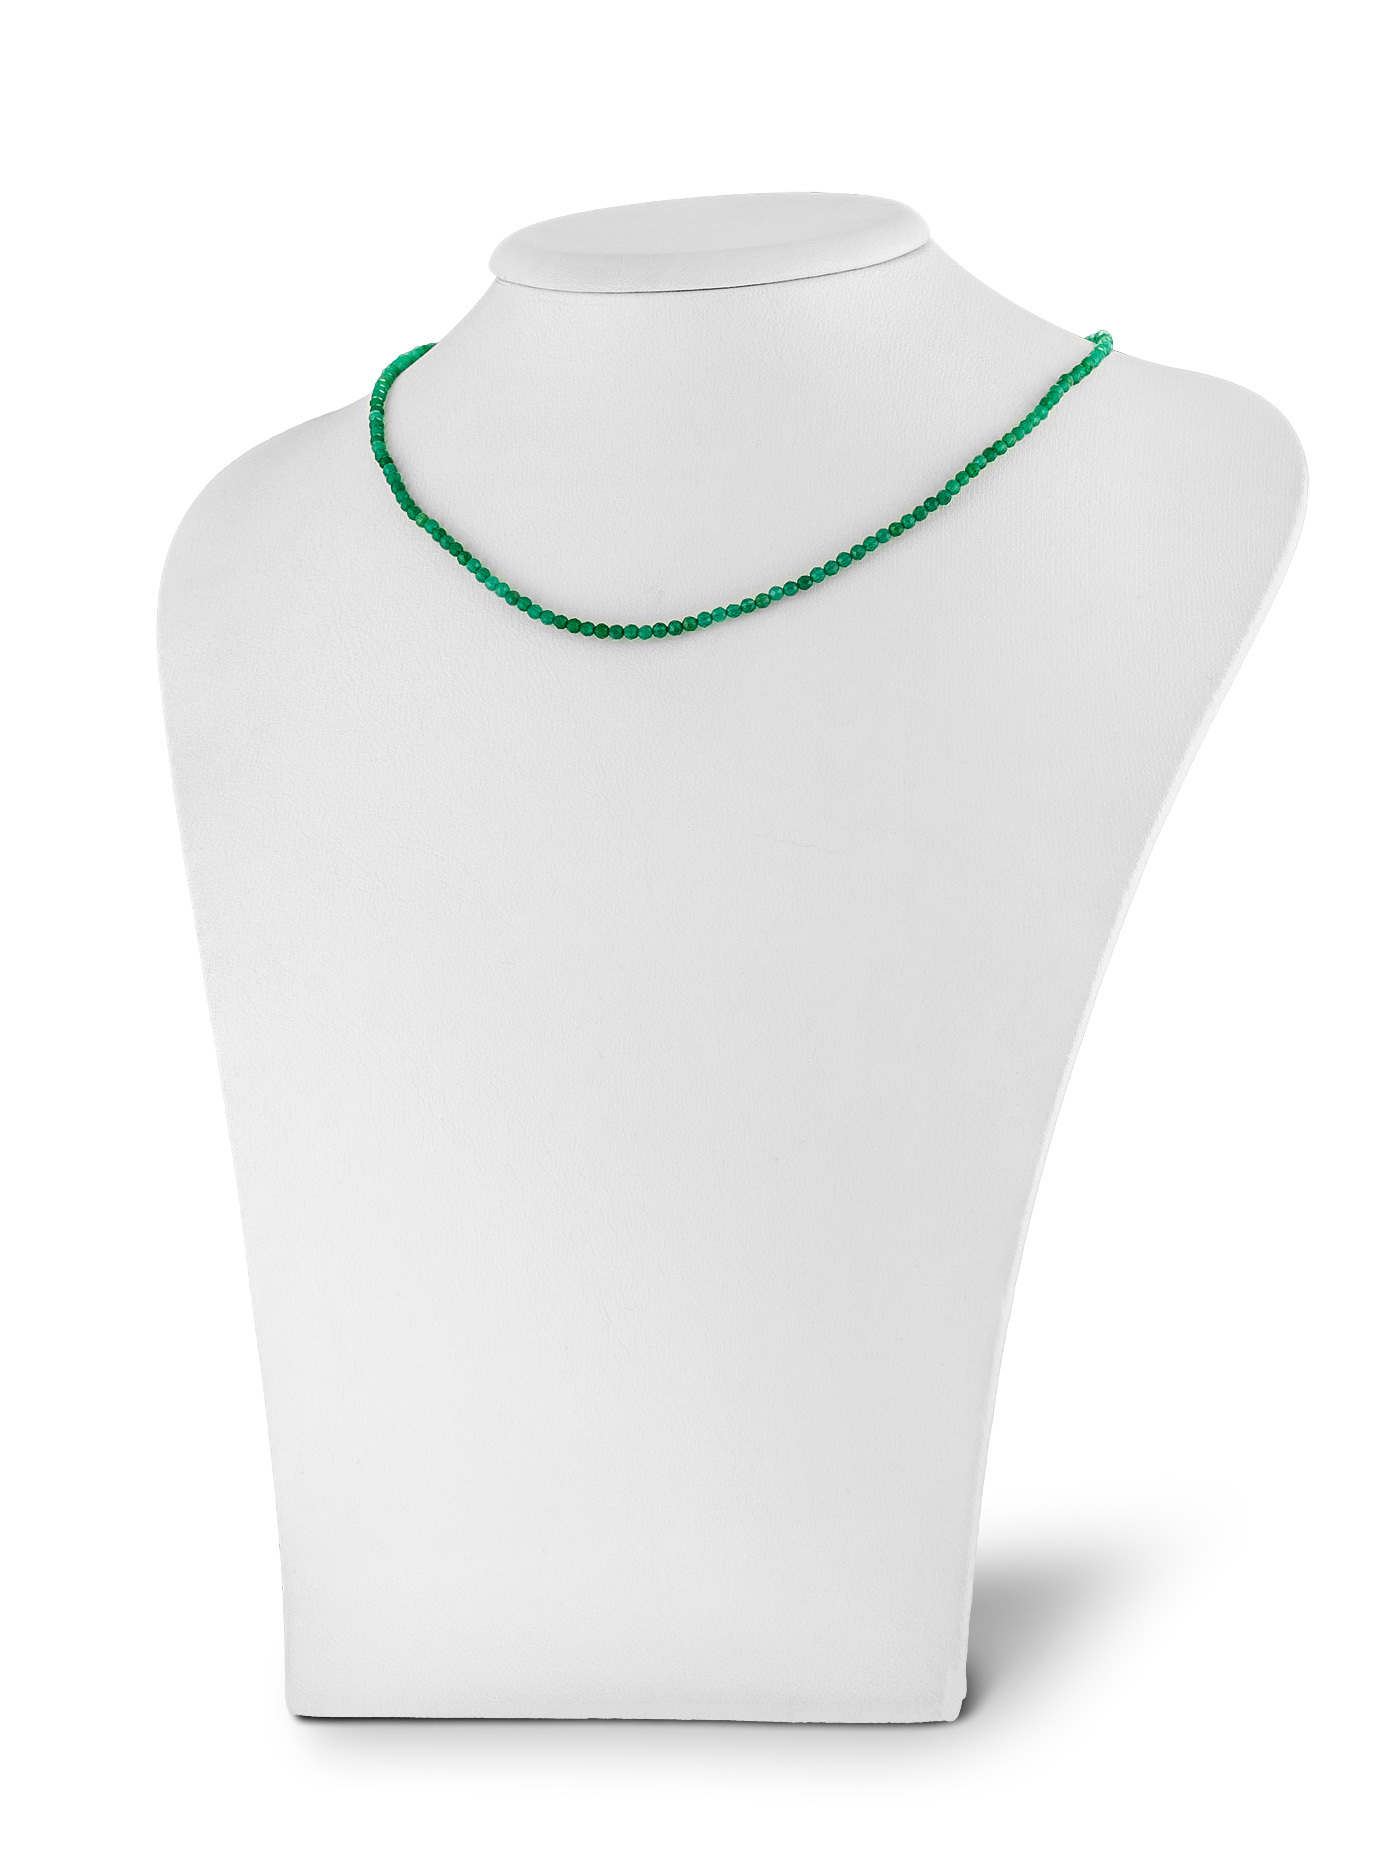 Женский чокер - колье на шею из натурального зеленого агата